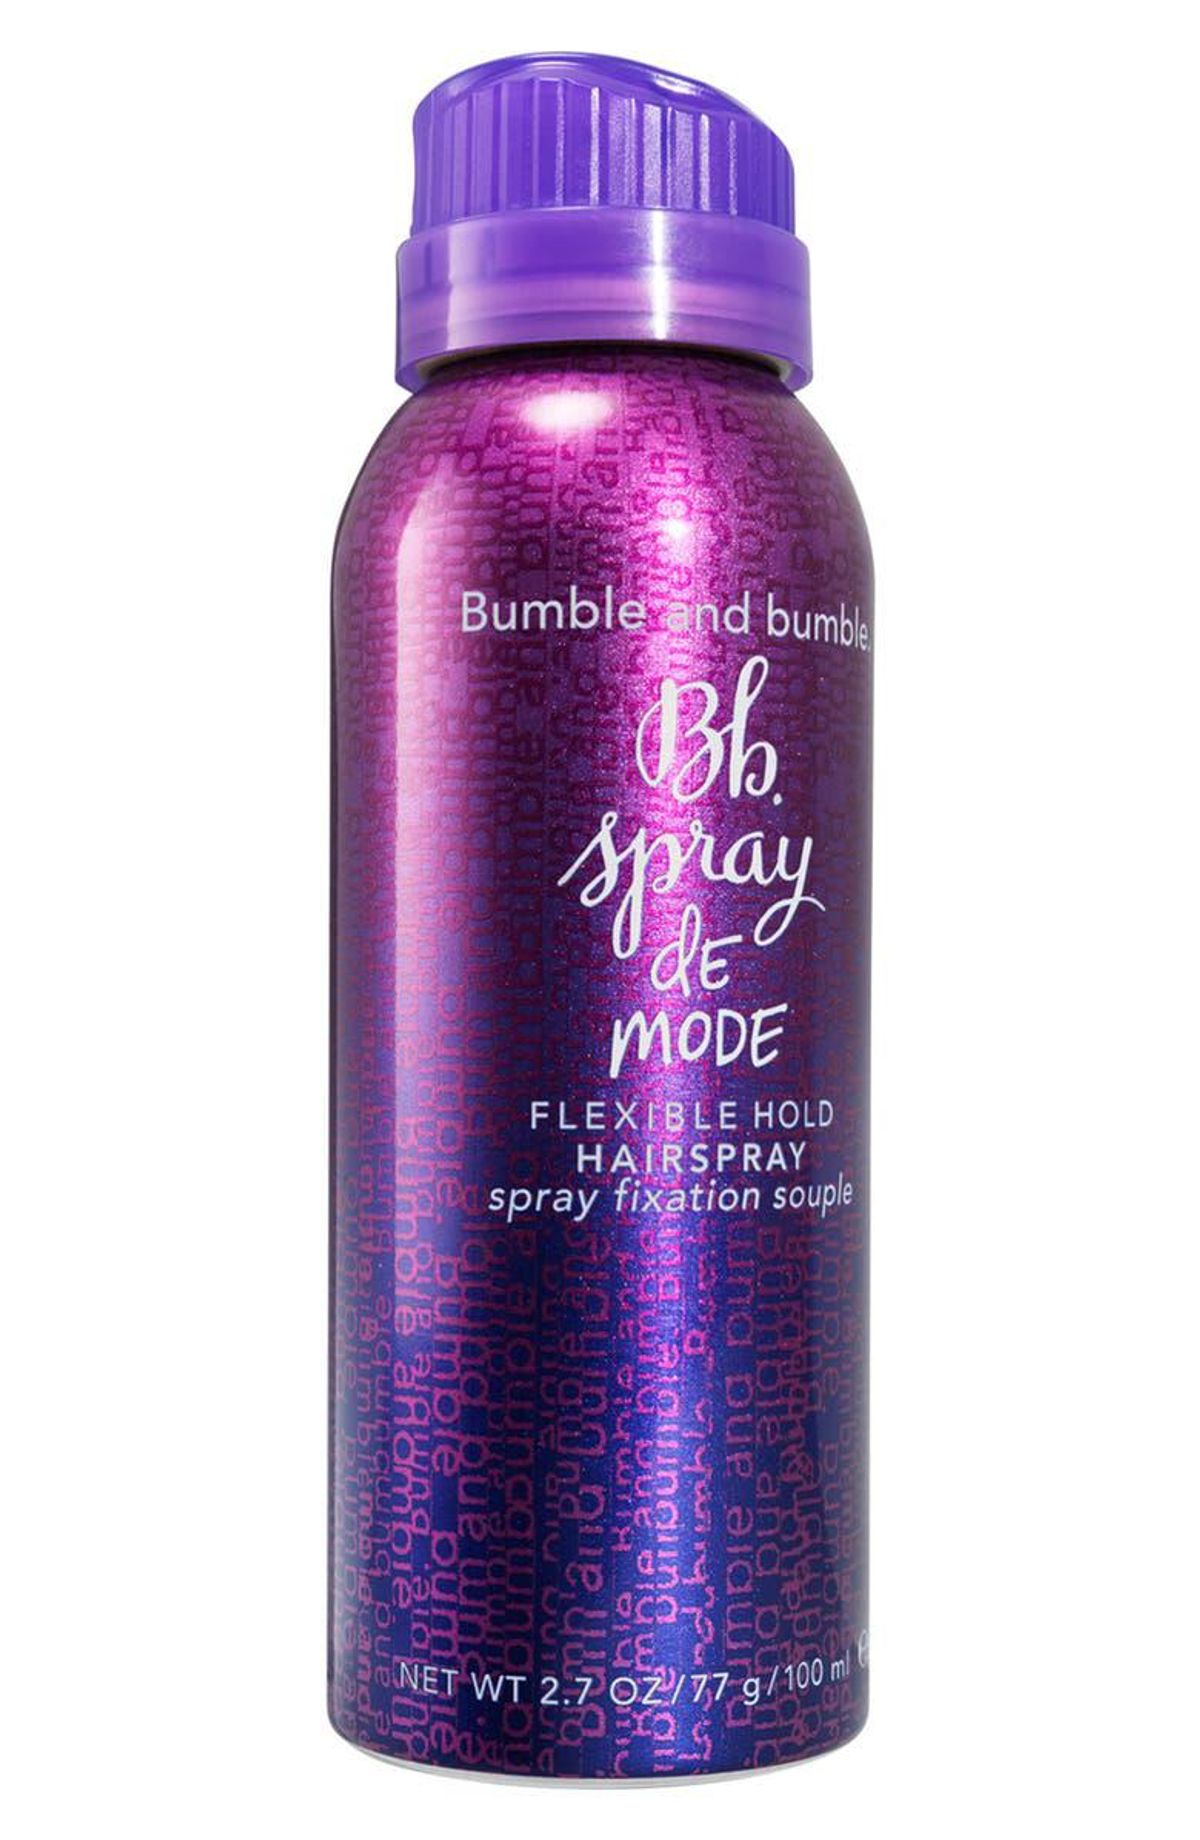 Mini Spray de Mode Flexible Hold Hairspray